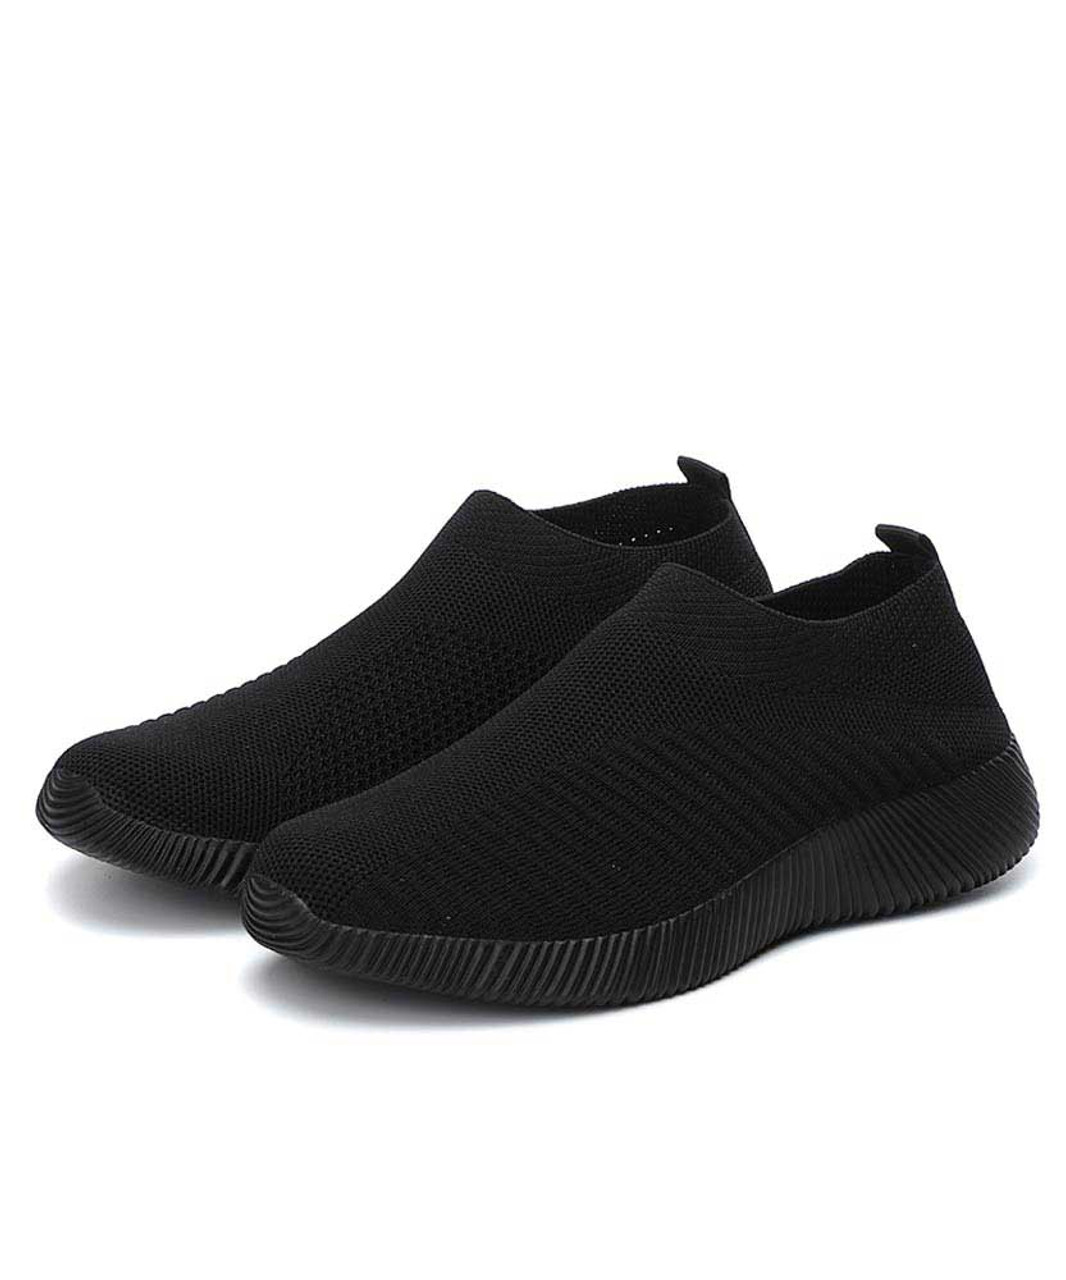 Black texture stripe slip on shoe sneaker | Womens sneakers shoes ...